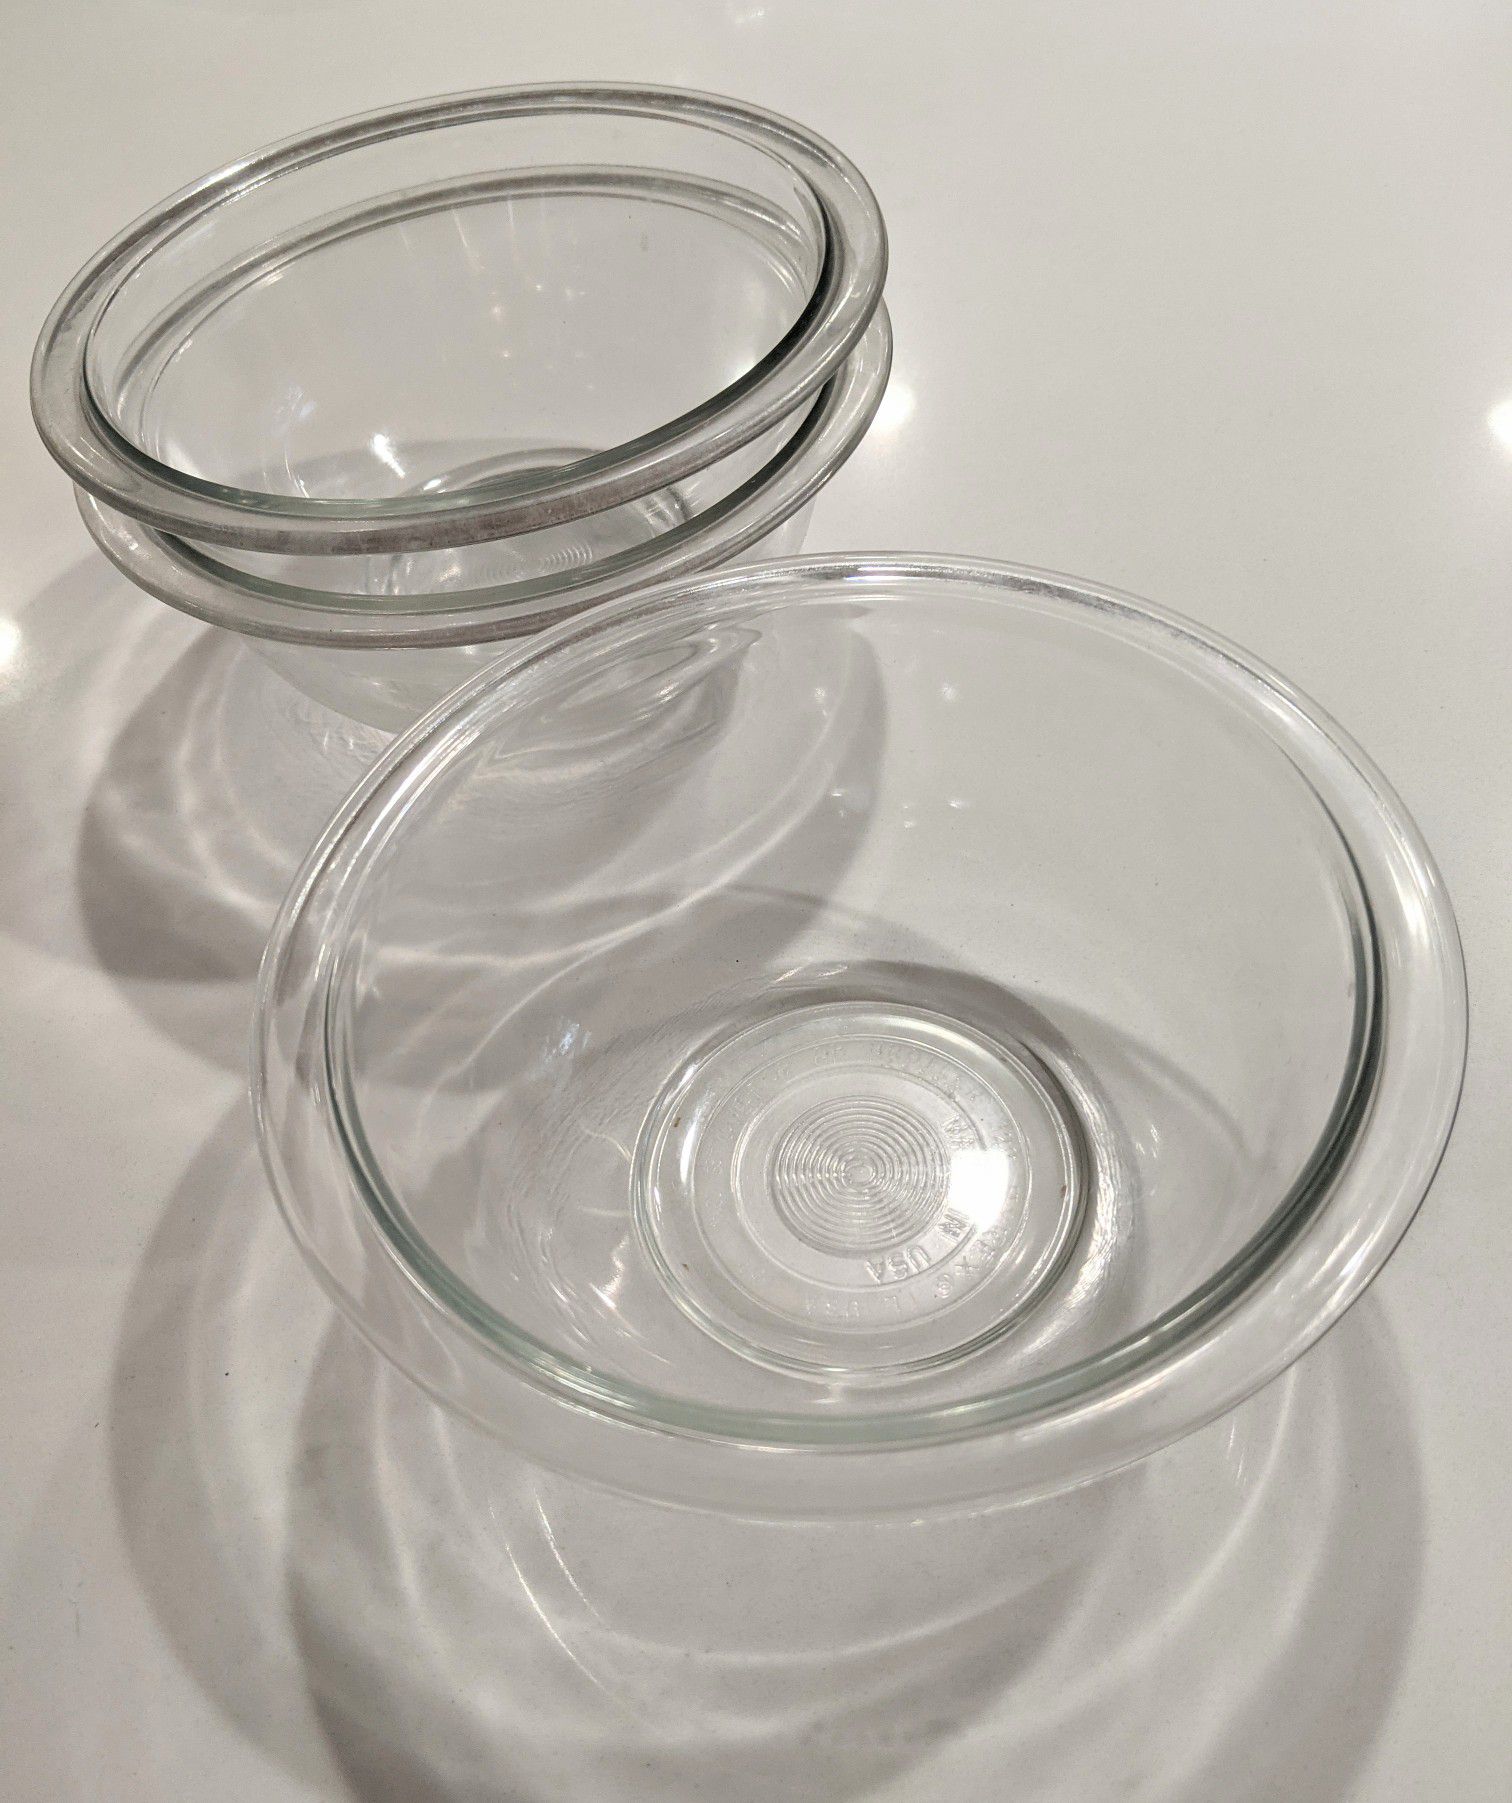 Pyrex glass bowl glassware bakeware